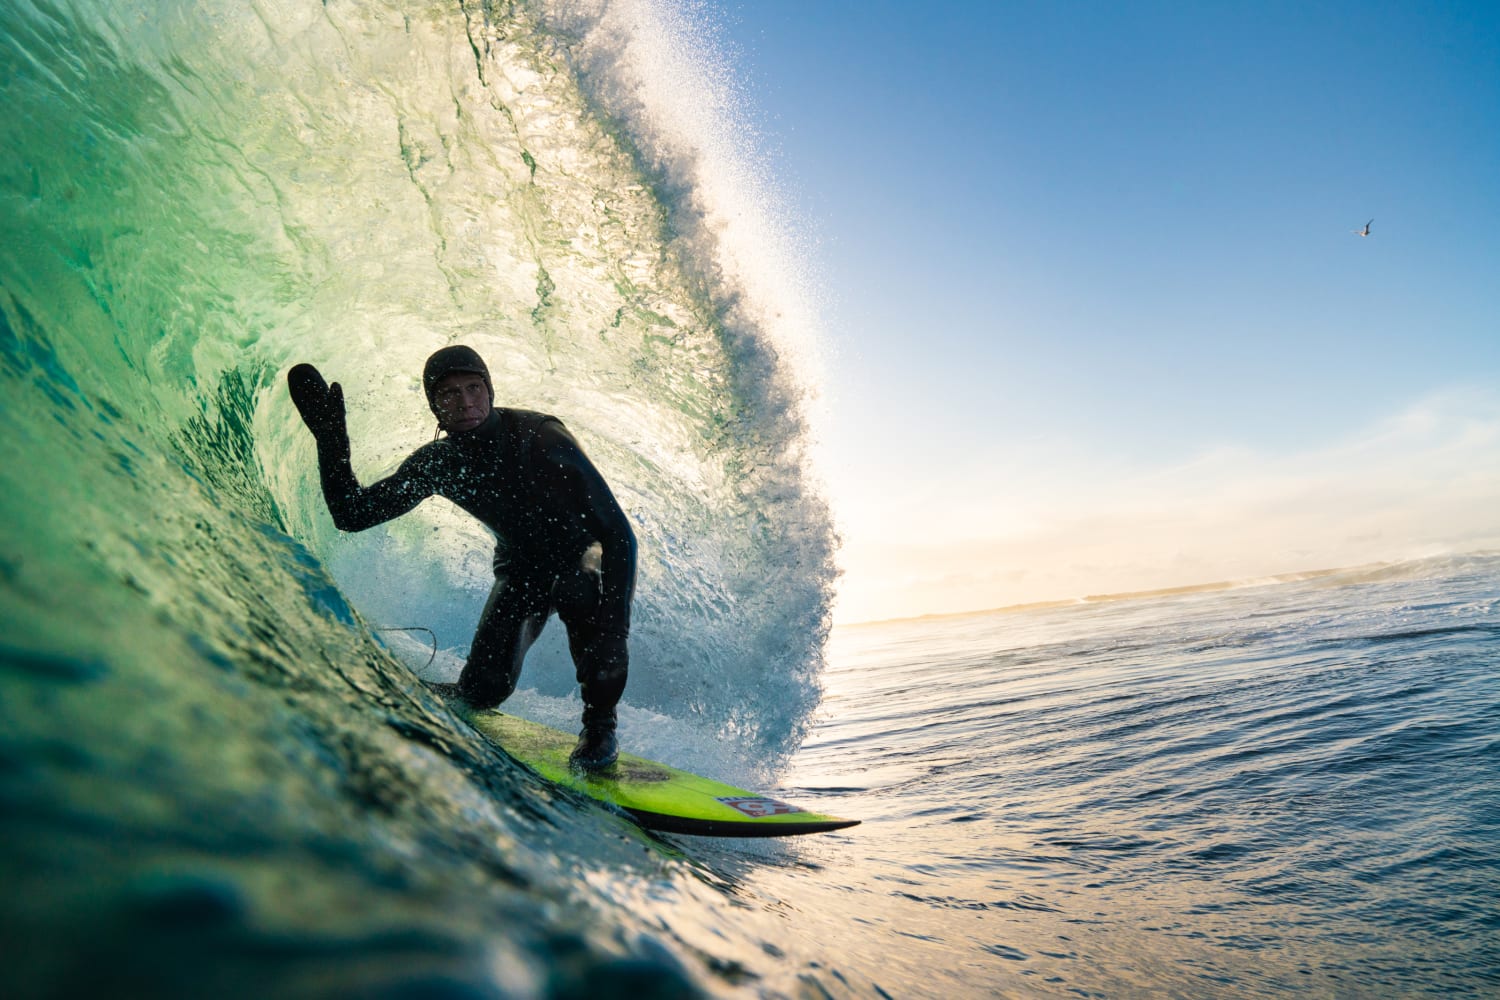 Best surf videos: 13 must-watch surfing clips